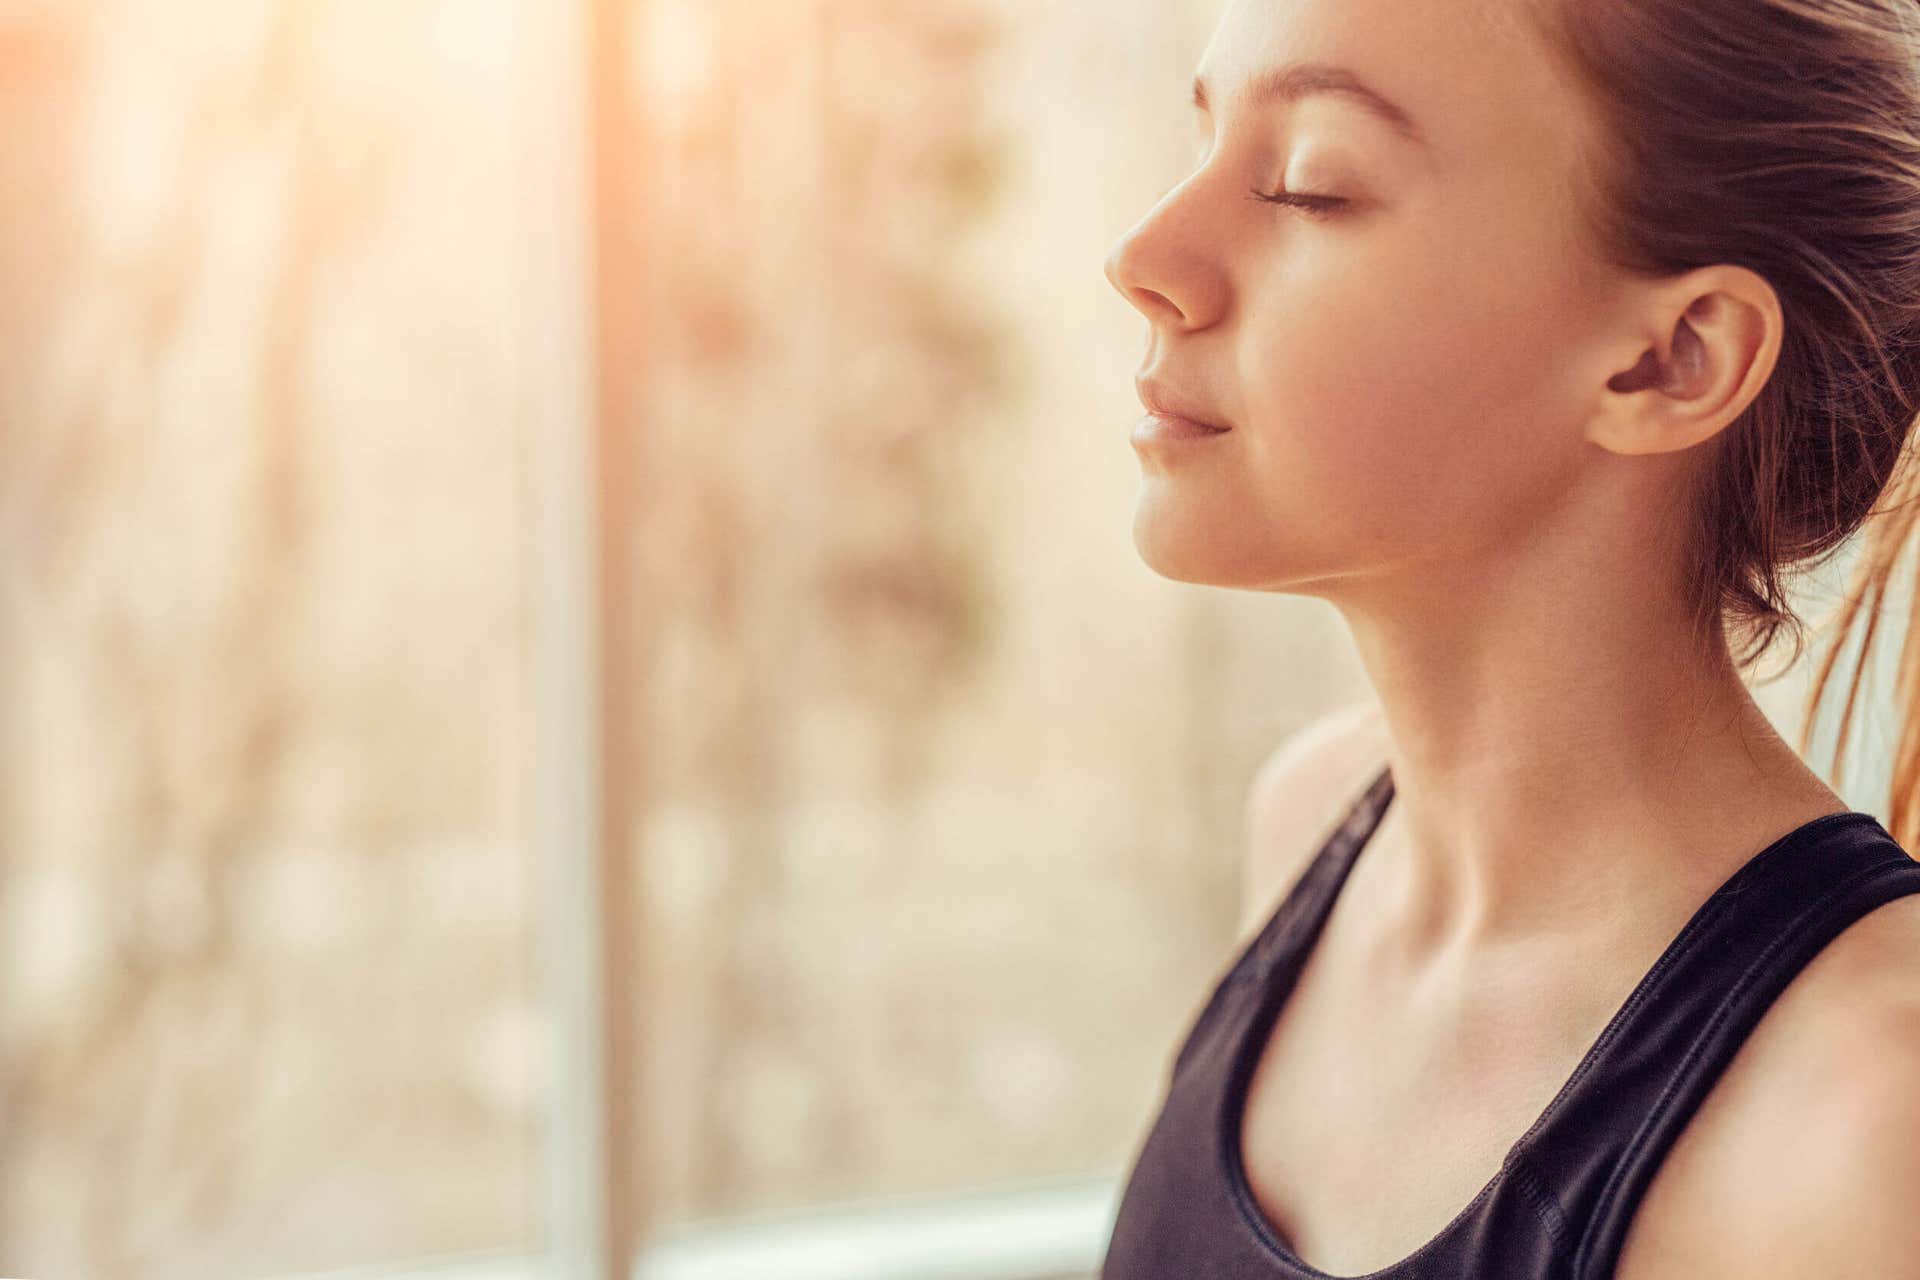 Respirar antes de hacer los ejercicios puede aliviar el dolor de espalda.